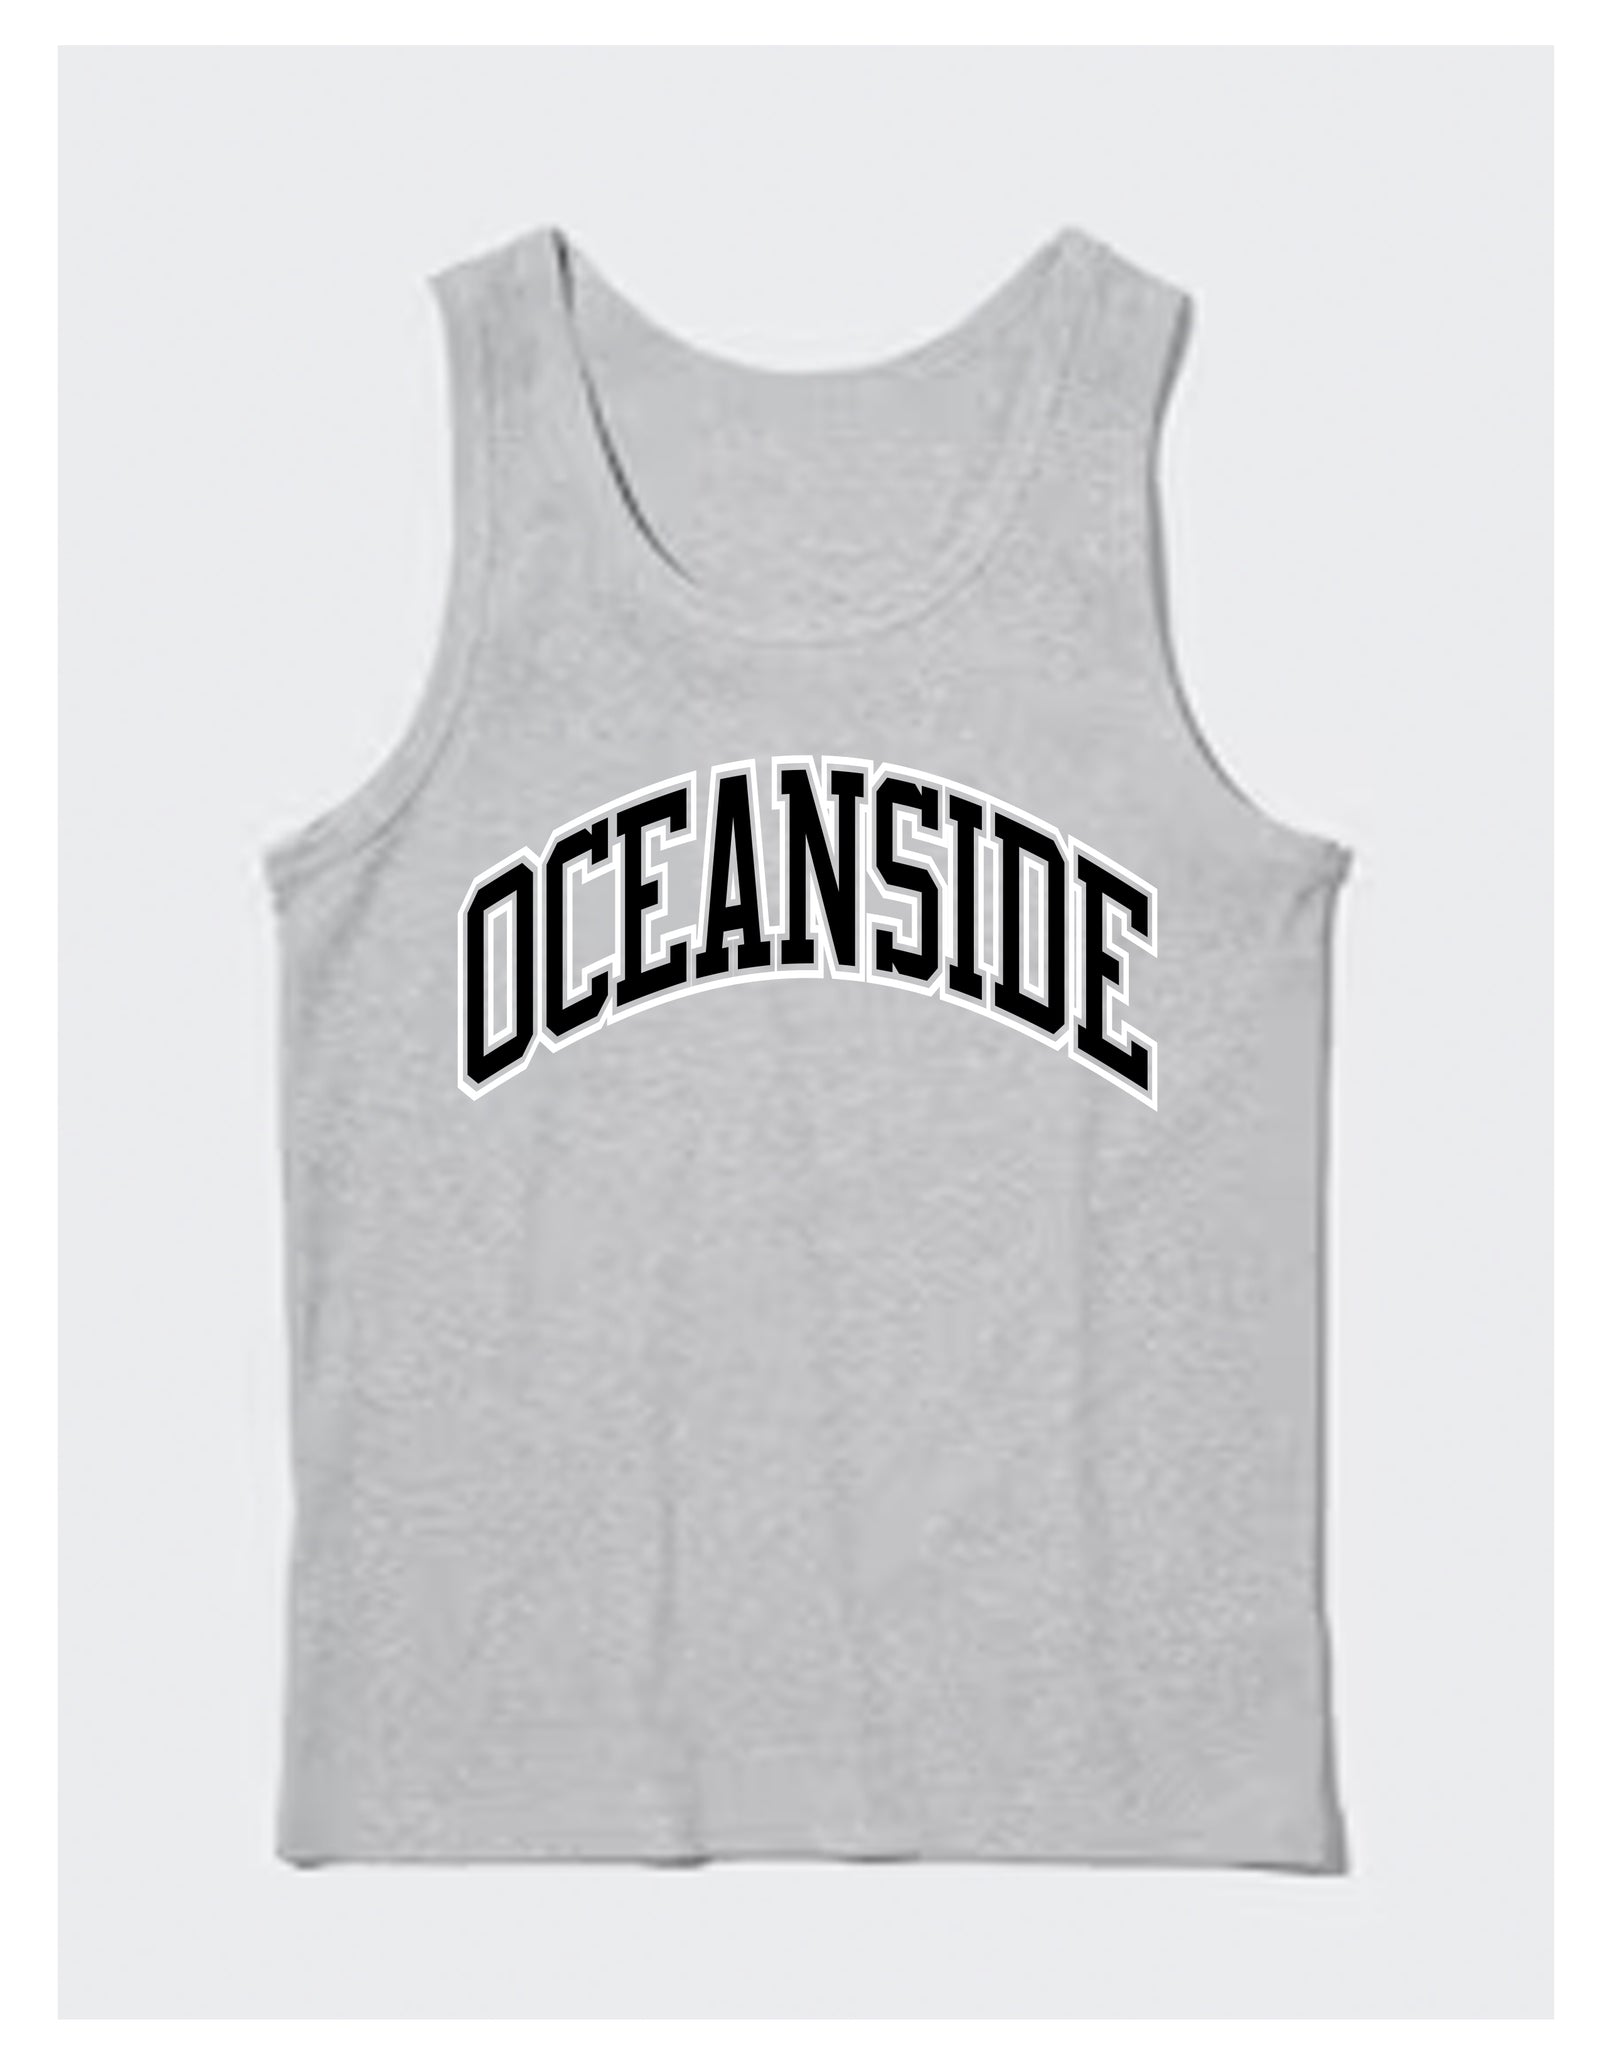 Oceanside Athletica Tank Top (Grey)